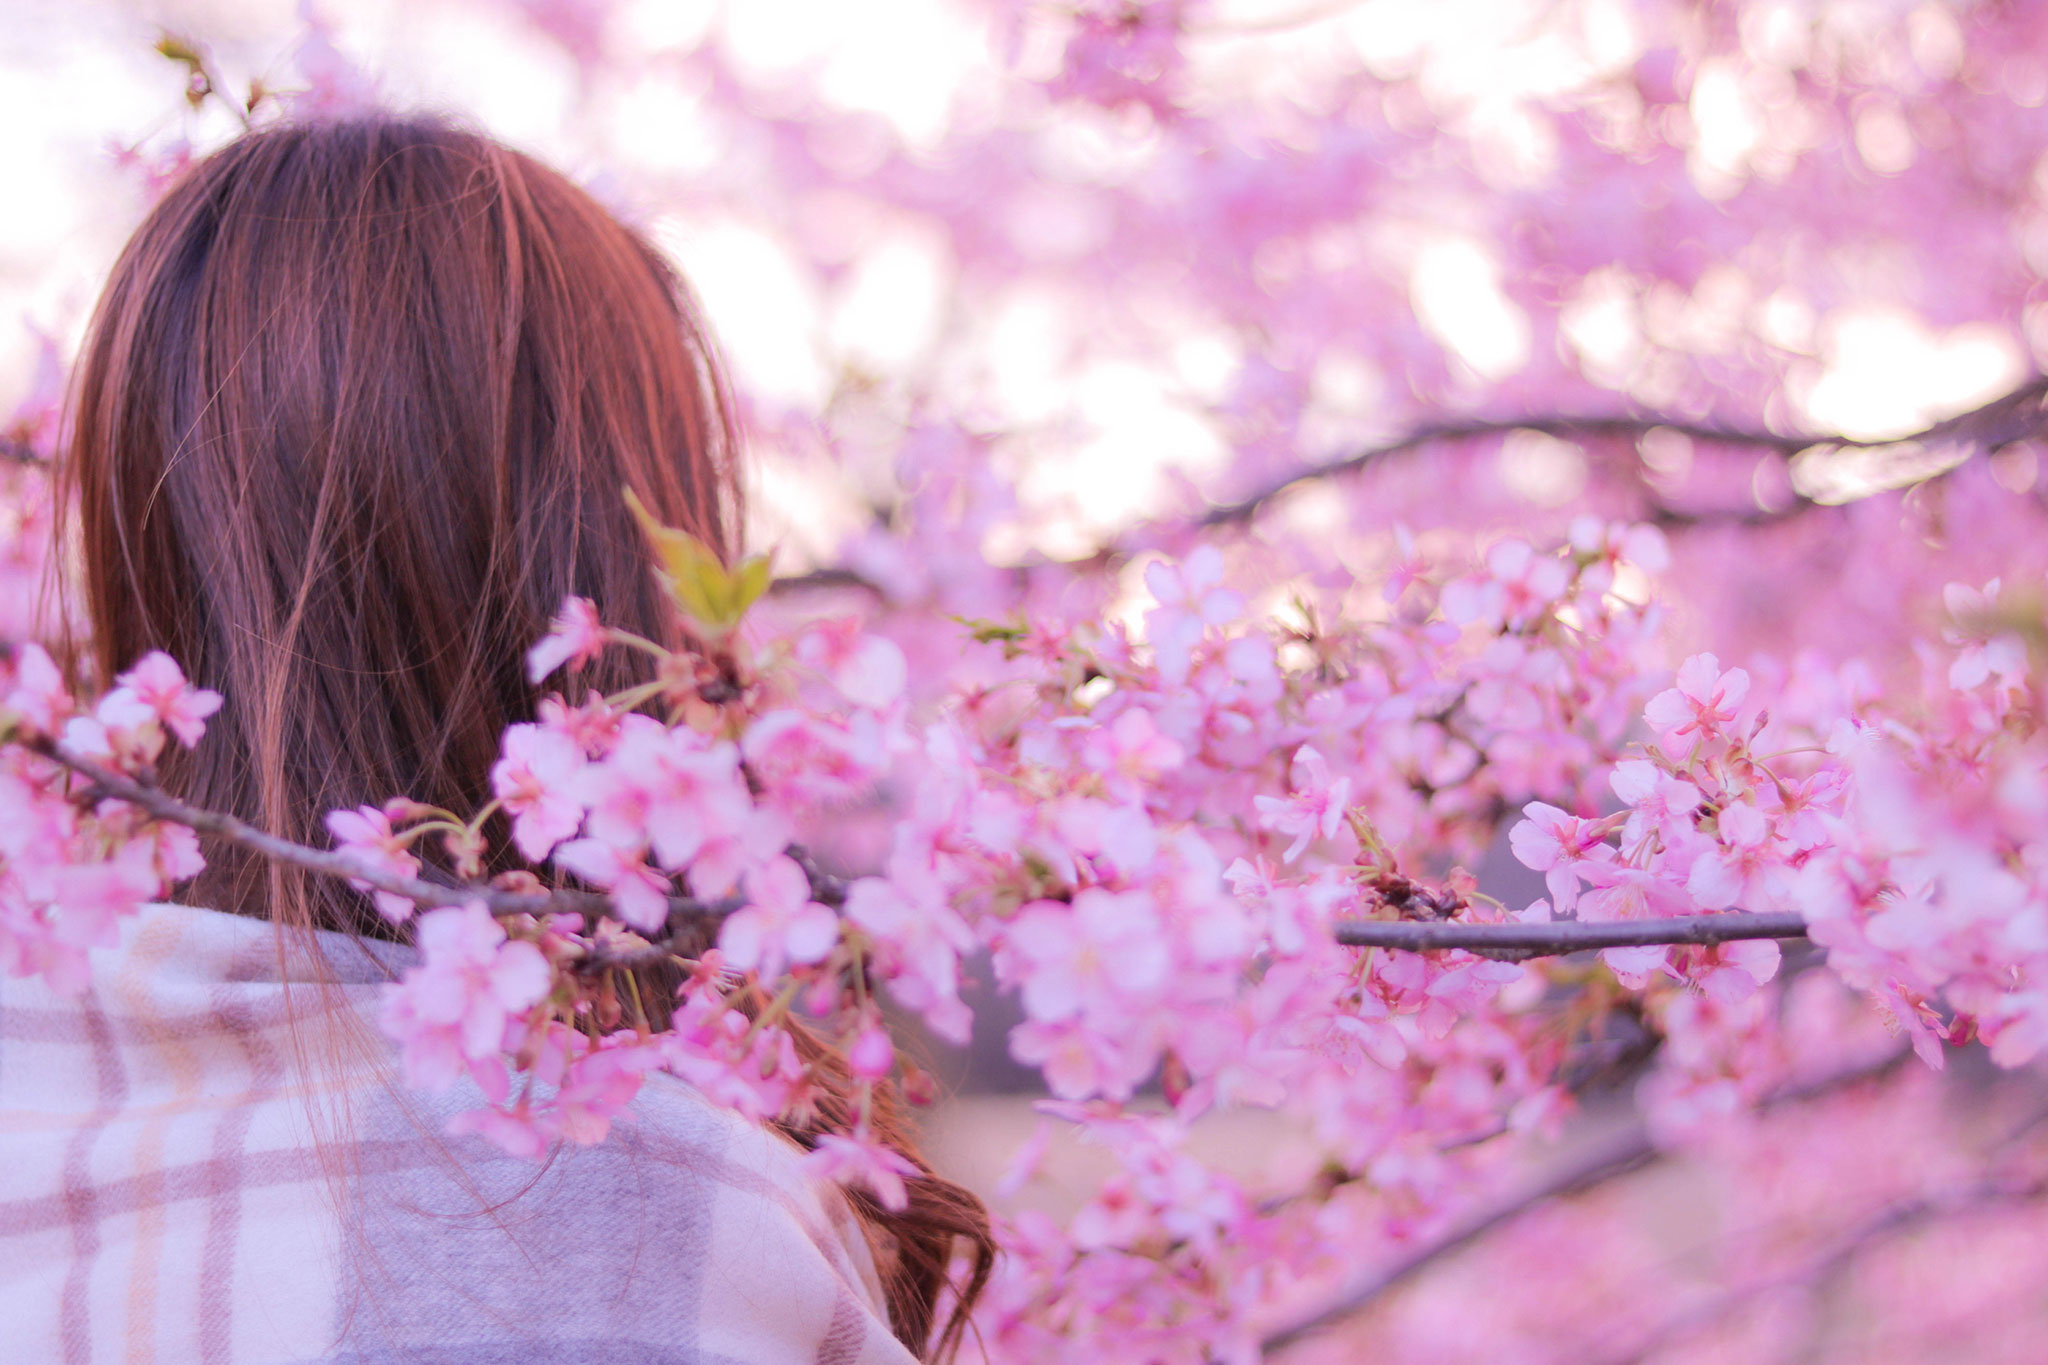 夕暮れ時に桜の枝の中に埋もれるエモい感じの女の子のフリー画像